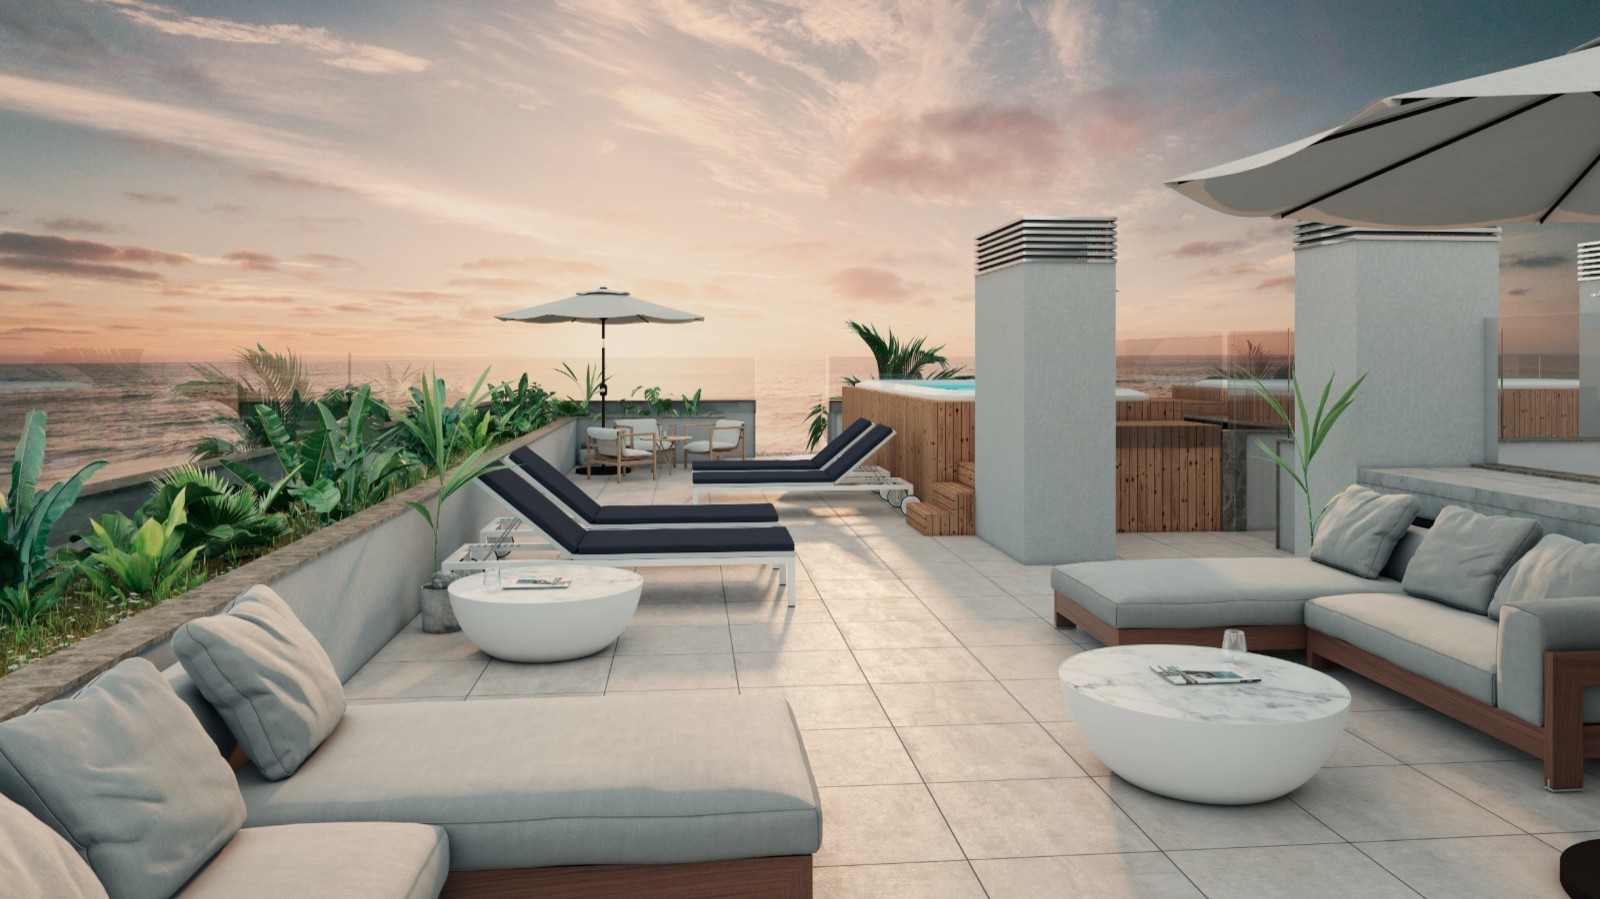 Apartamento T4 com vista de mar, terraço e piscina, para venda, Gaia, Portugal_250275